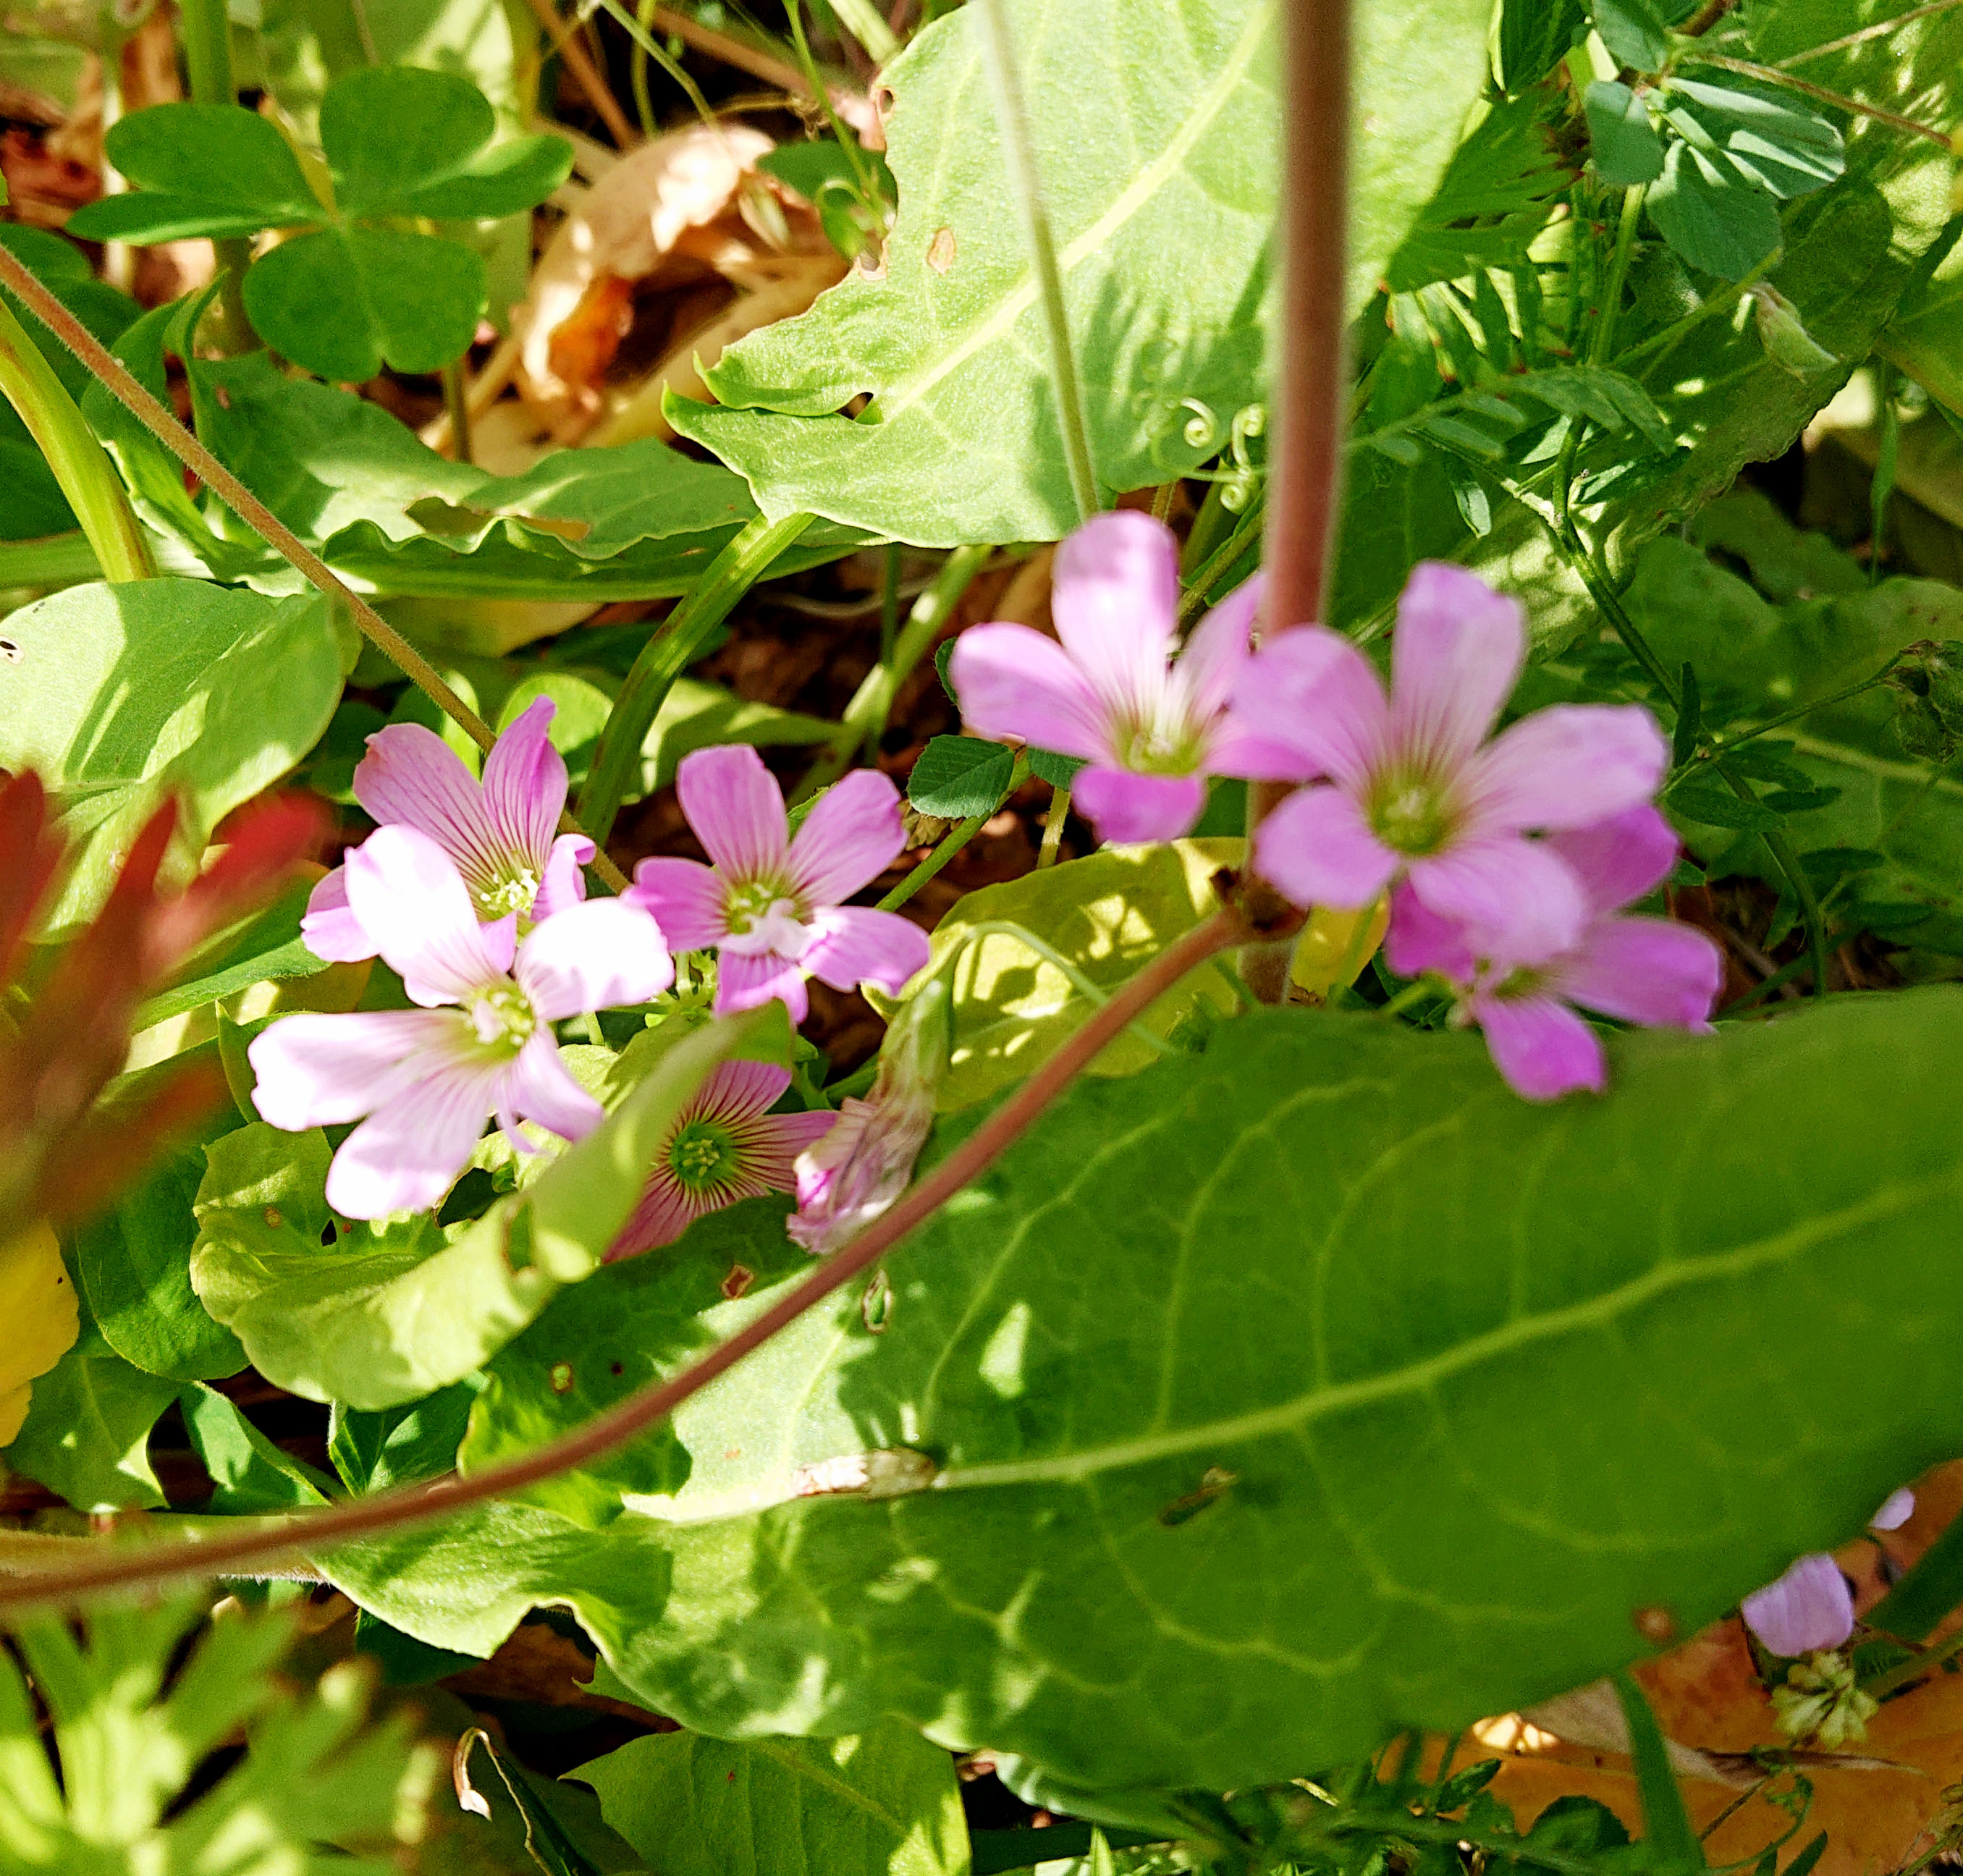 ご近所の草花 ハートの葉っぱやピンク色の花 カワイイお花は何だろう 広島市植物公園の久保さんに聞いてみた まるごとgo 広島市安佐南区 安佐北区あたりの地域情熱ブログ